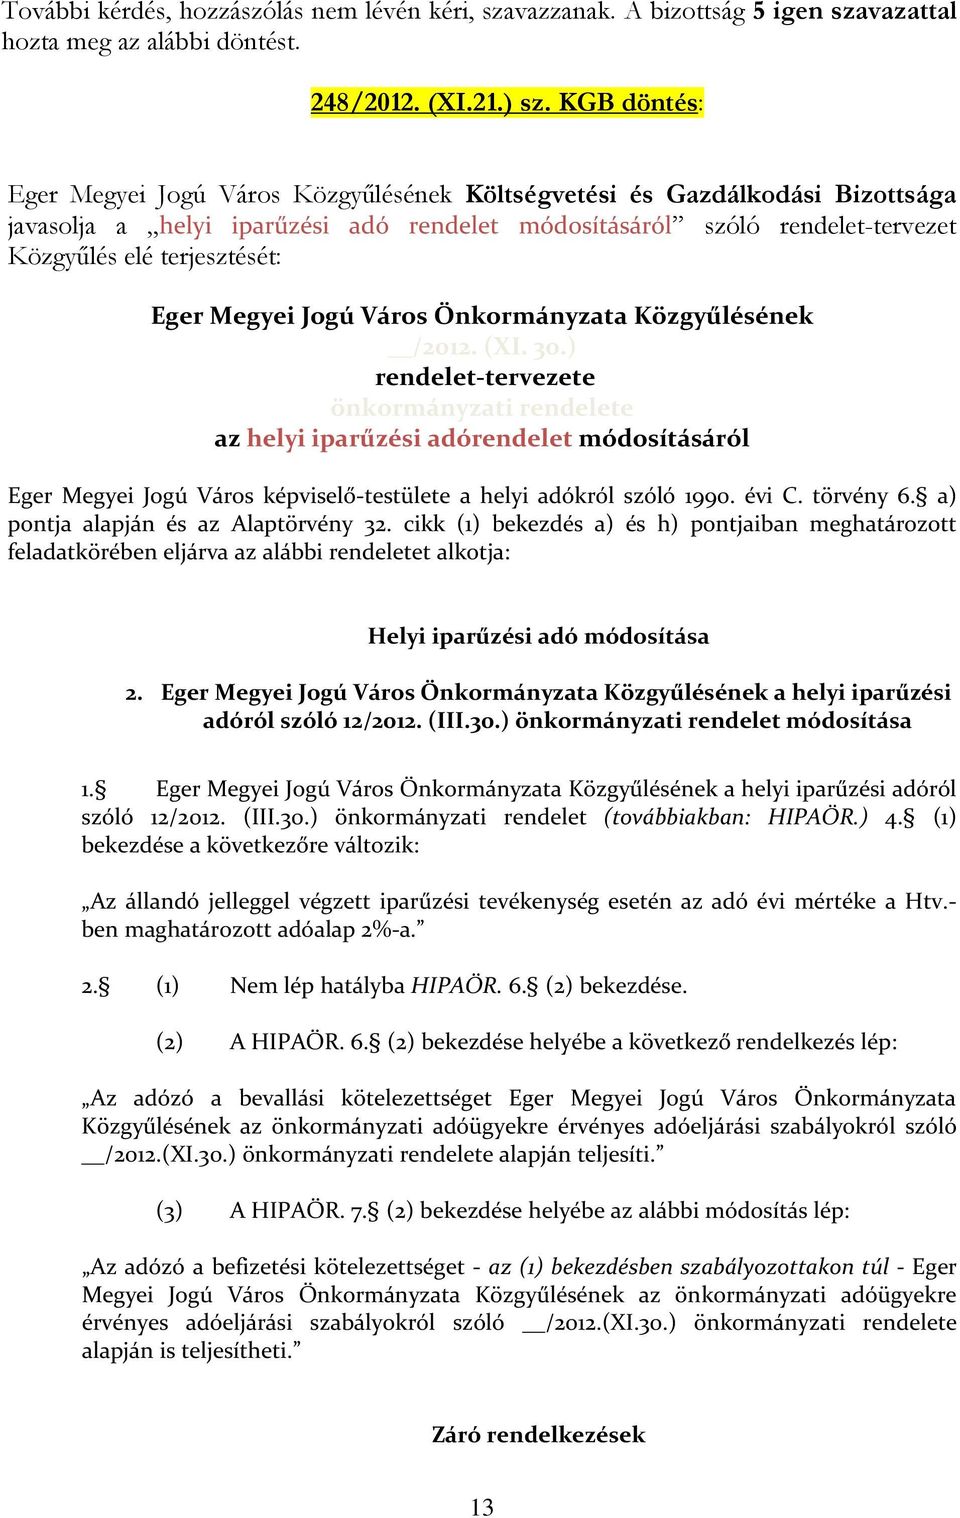 Eger Megyei Jogú Város Önkormányzata Közgyűlésének /2012. (XI. 30.